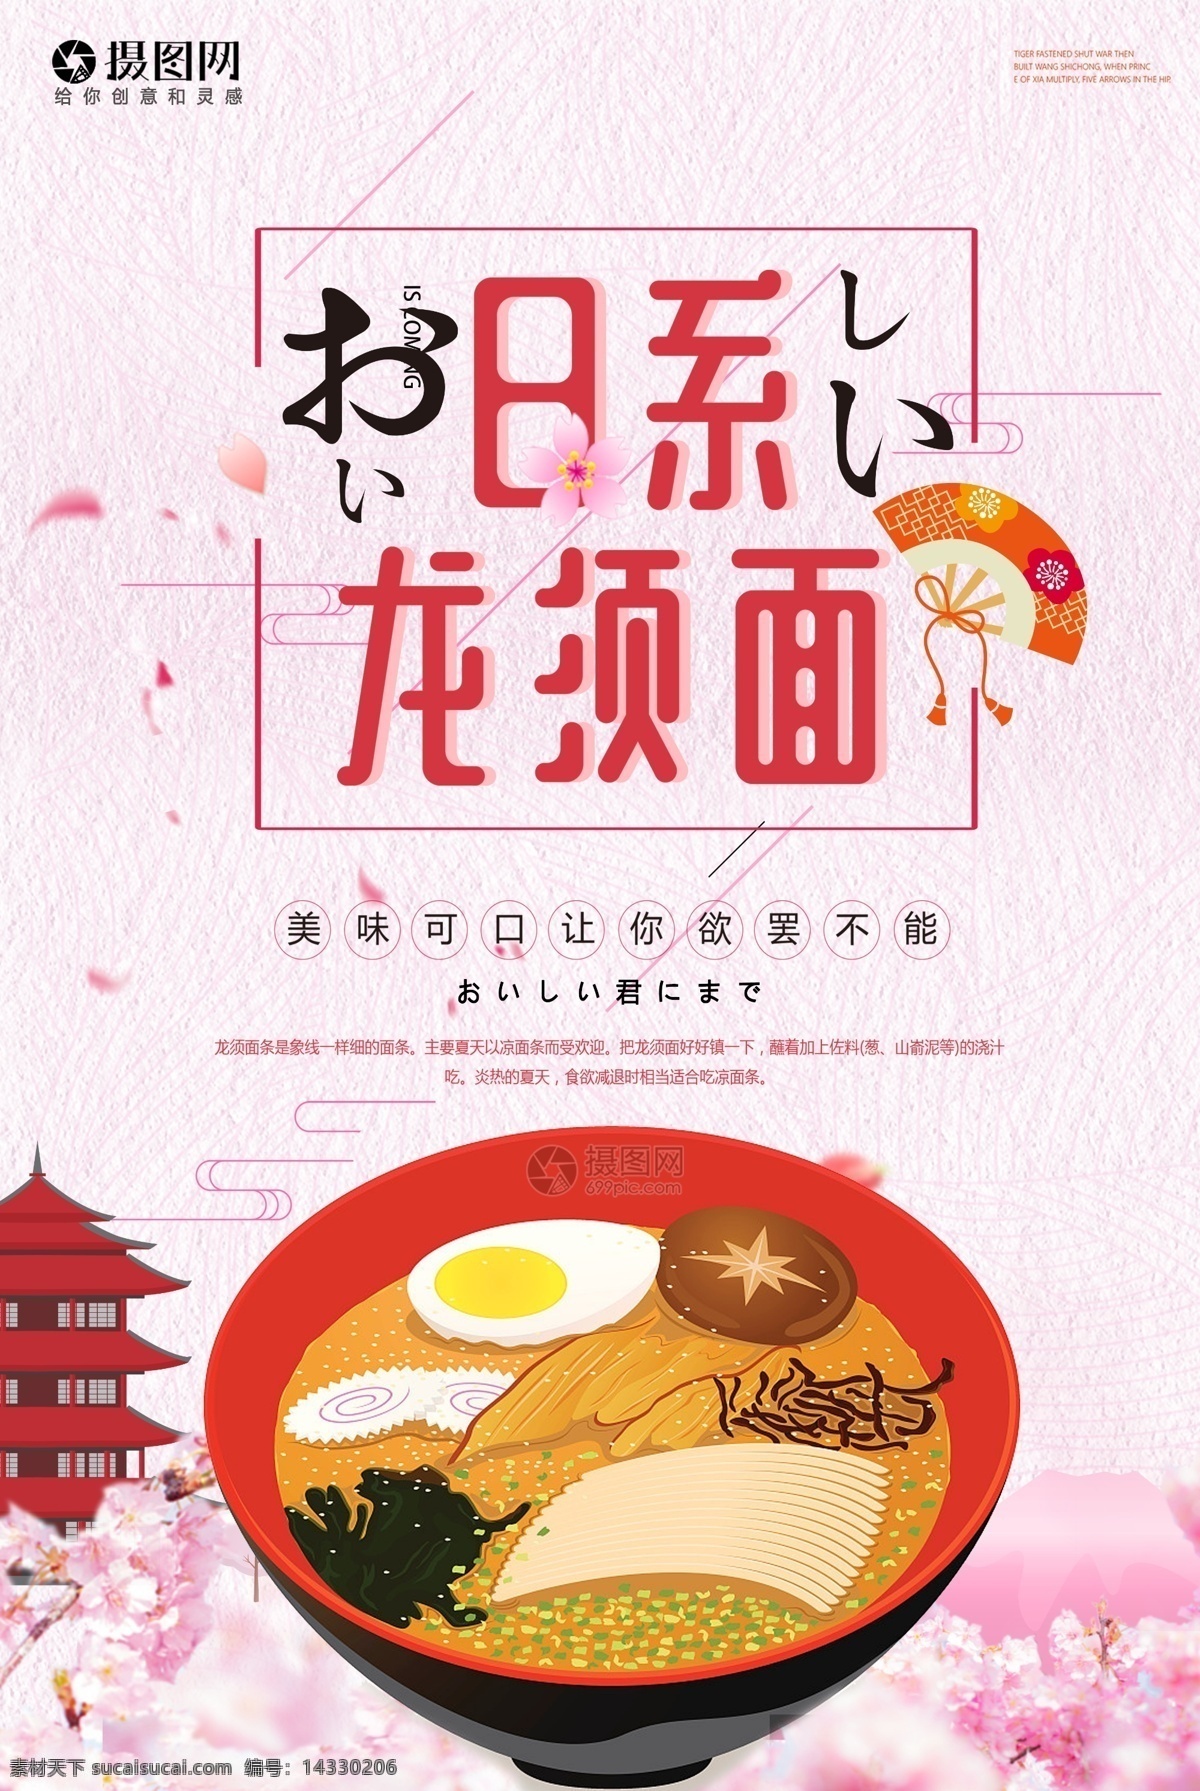 日 系 龙须面 海报 日系 清新 小清新 日系风格 日本美食 日本料理 粉色系